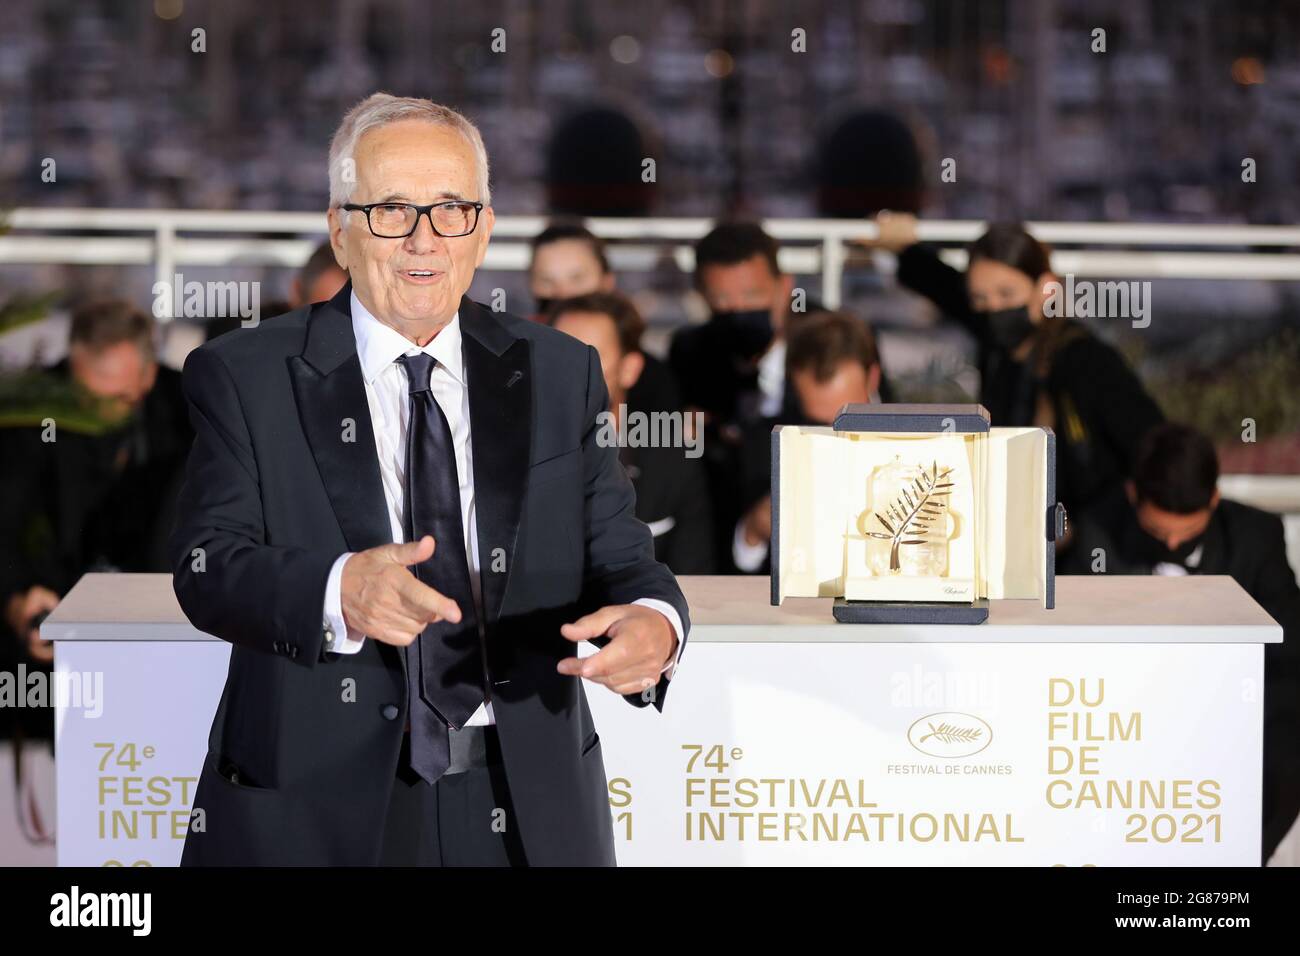 Das 74. Filmfestival von Cannes - Fotocall nach der Abschlusszeremonie - Cannes, Frankreich, 17. Juli 2021. Regisseur Marco Bellocchio posiert mit der Ehrengalde Palme d'Or. REUTERS/Reinhard Krause Stockfoto